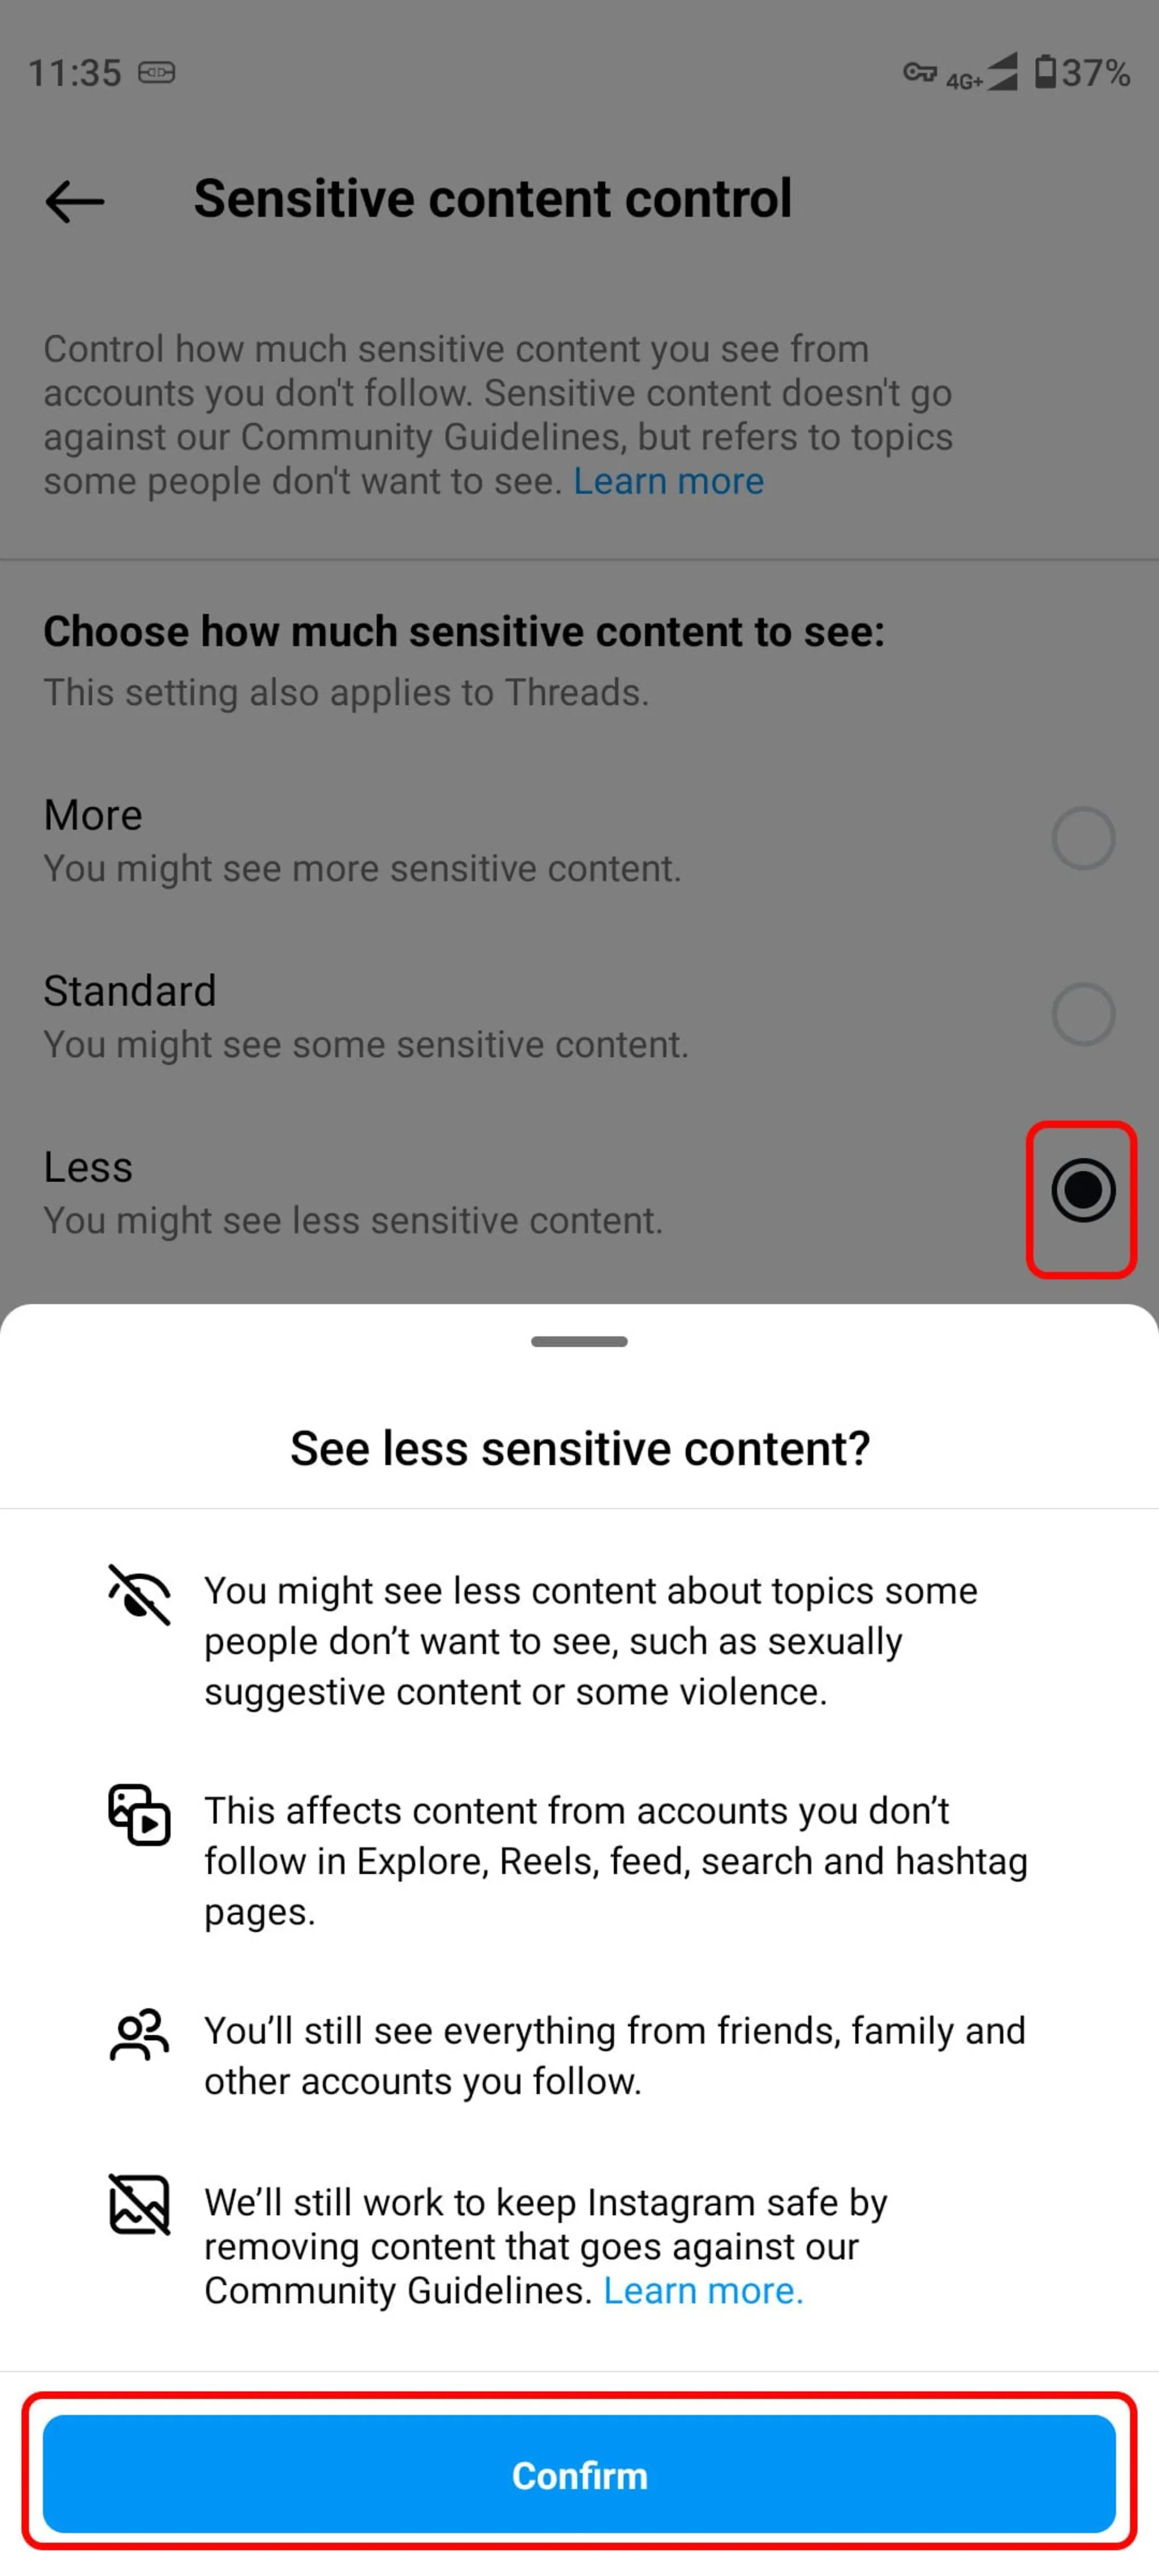 انتخاب گزینه‌ Less و Confirm برای فعال کردن گزینه‌ Sensitive Content Control